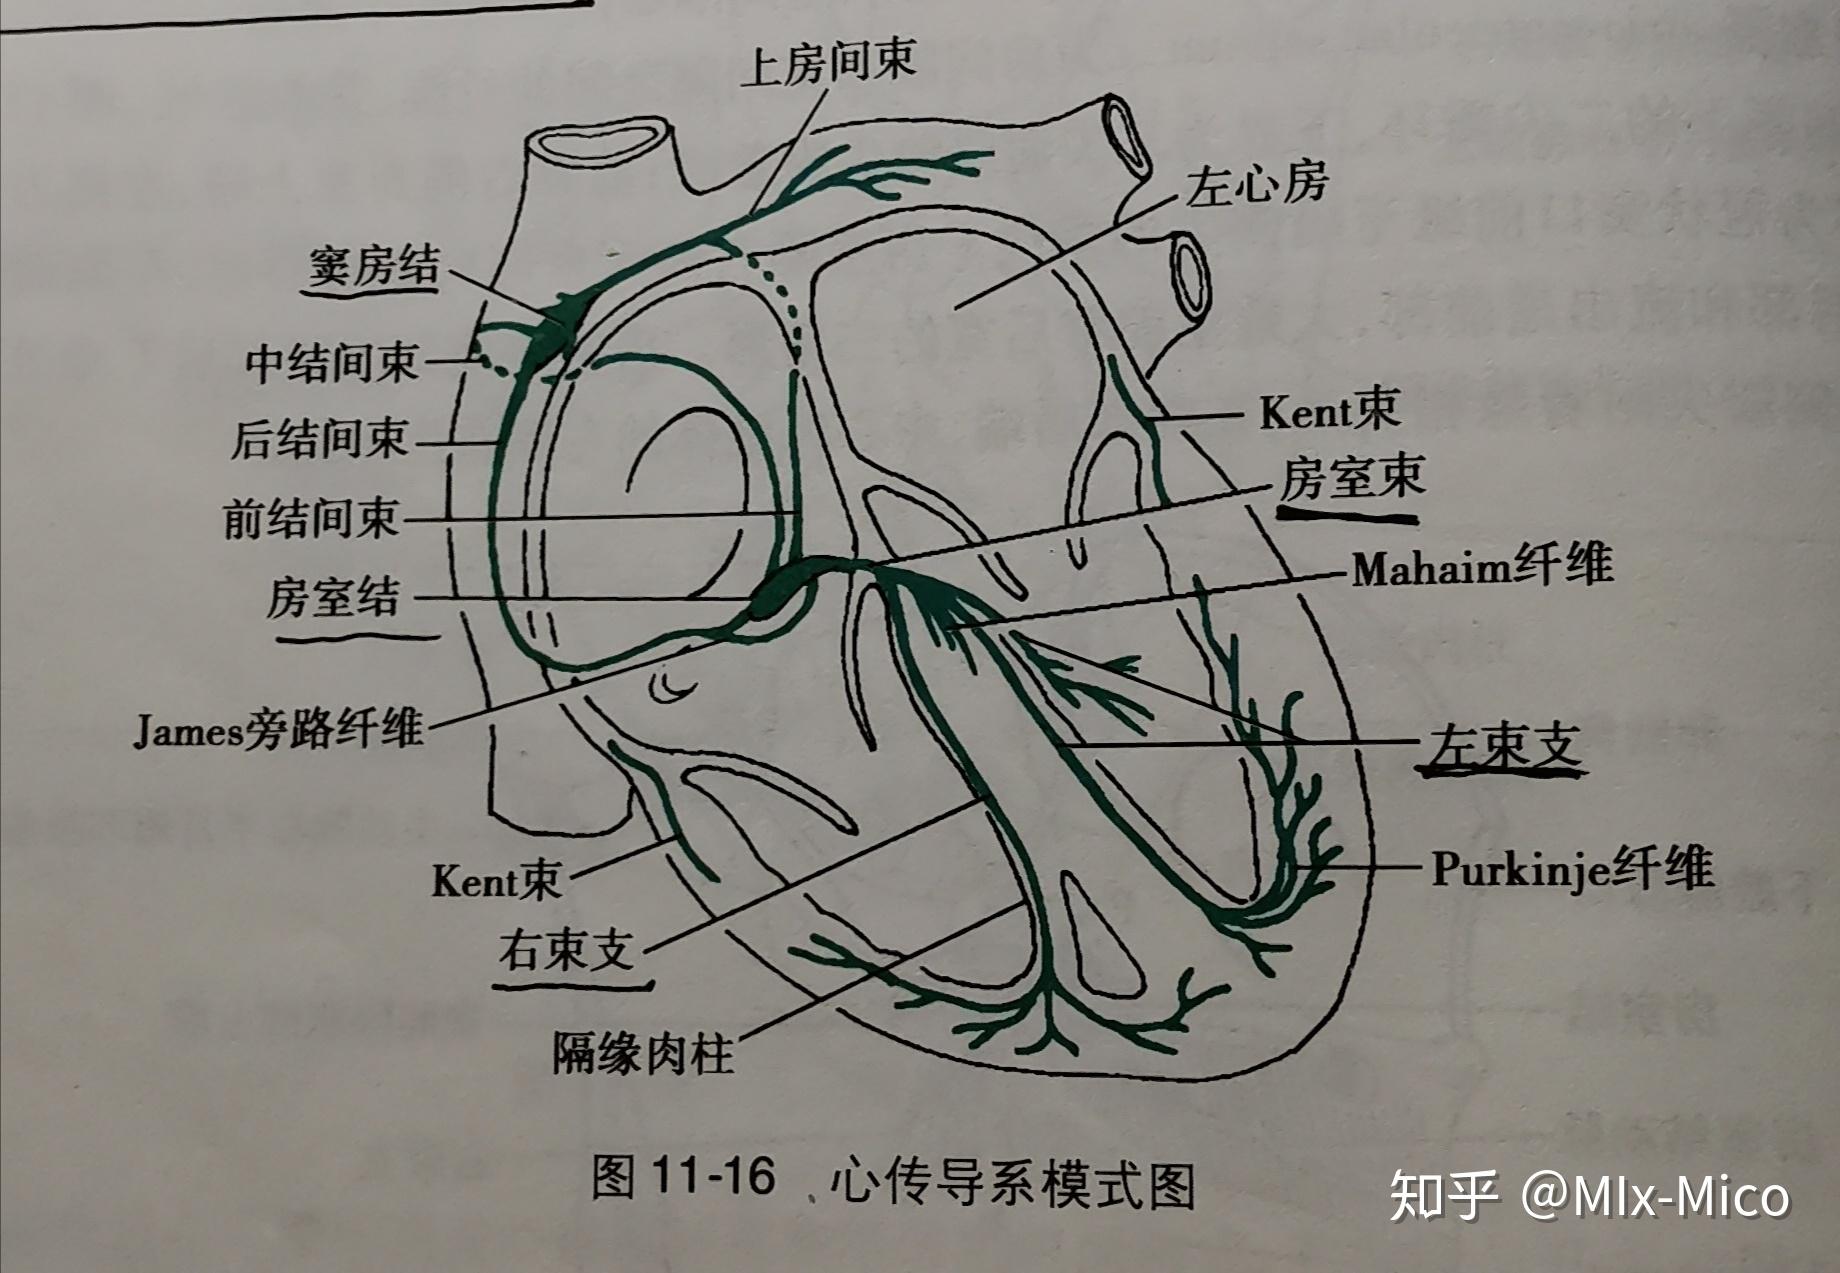 图1-3 心脏在纵隔内的位置——心脏投影-心脏外科基础图解-医学